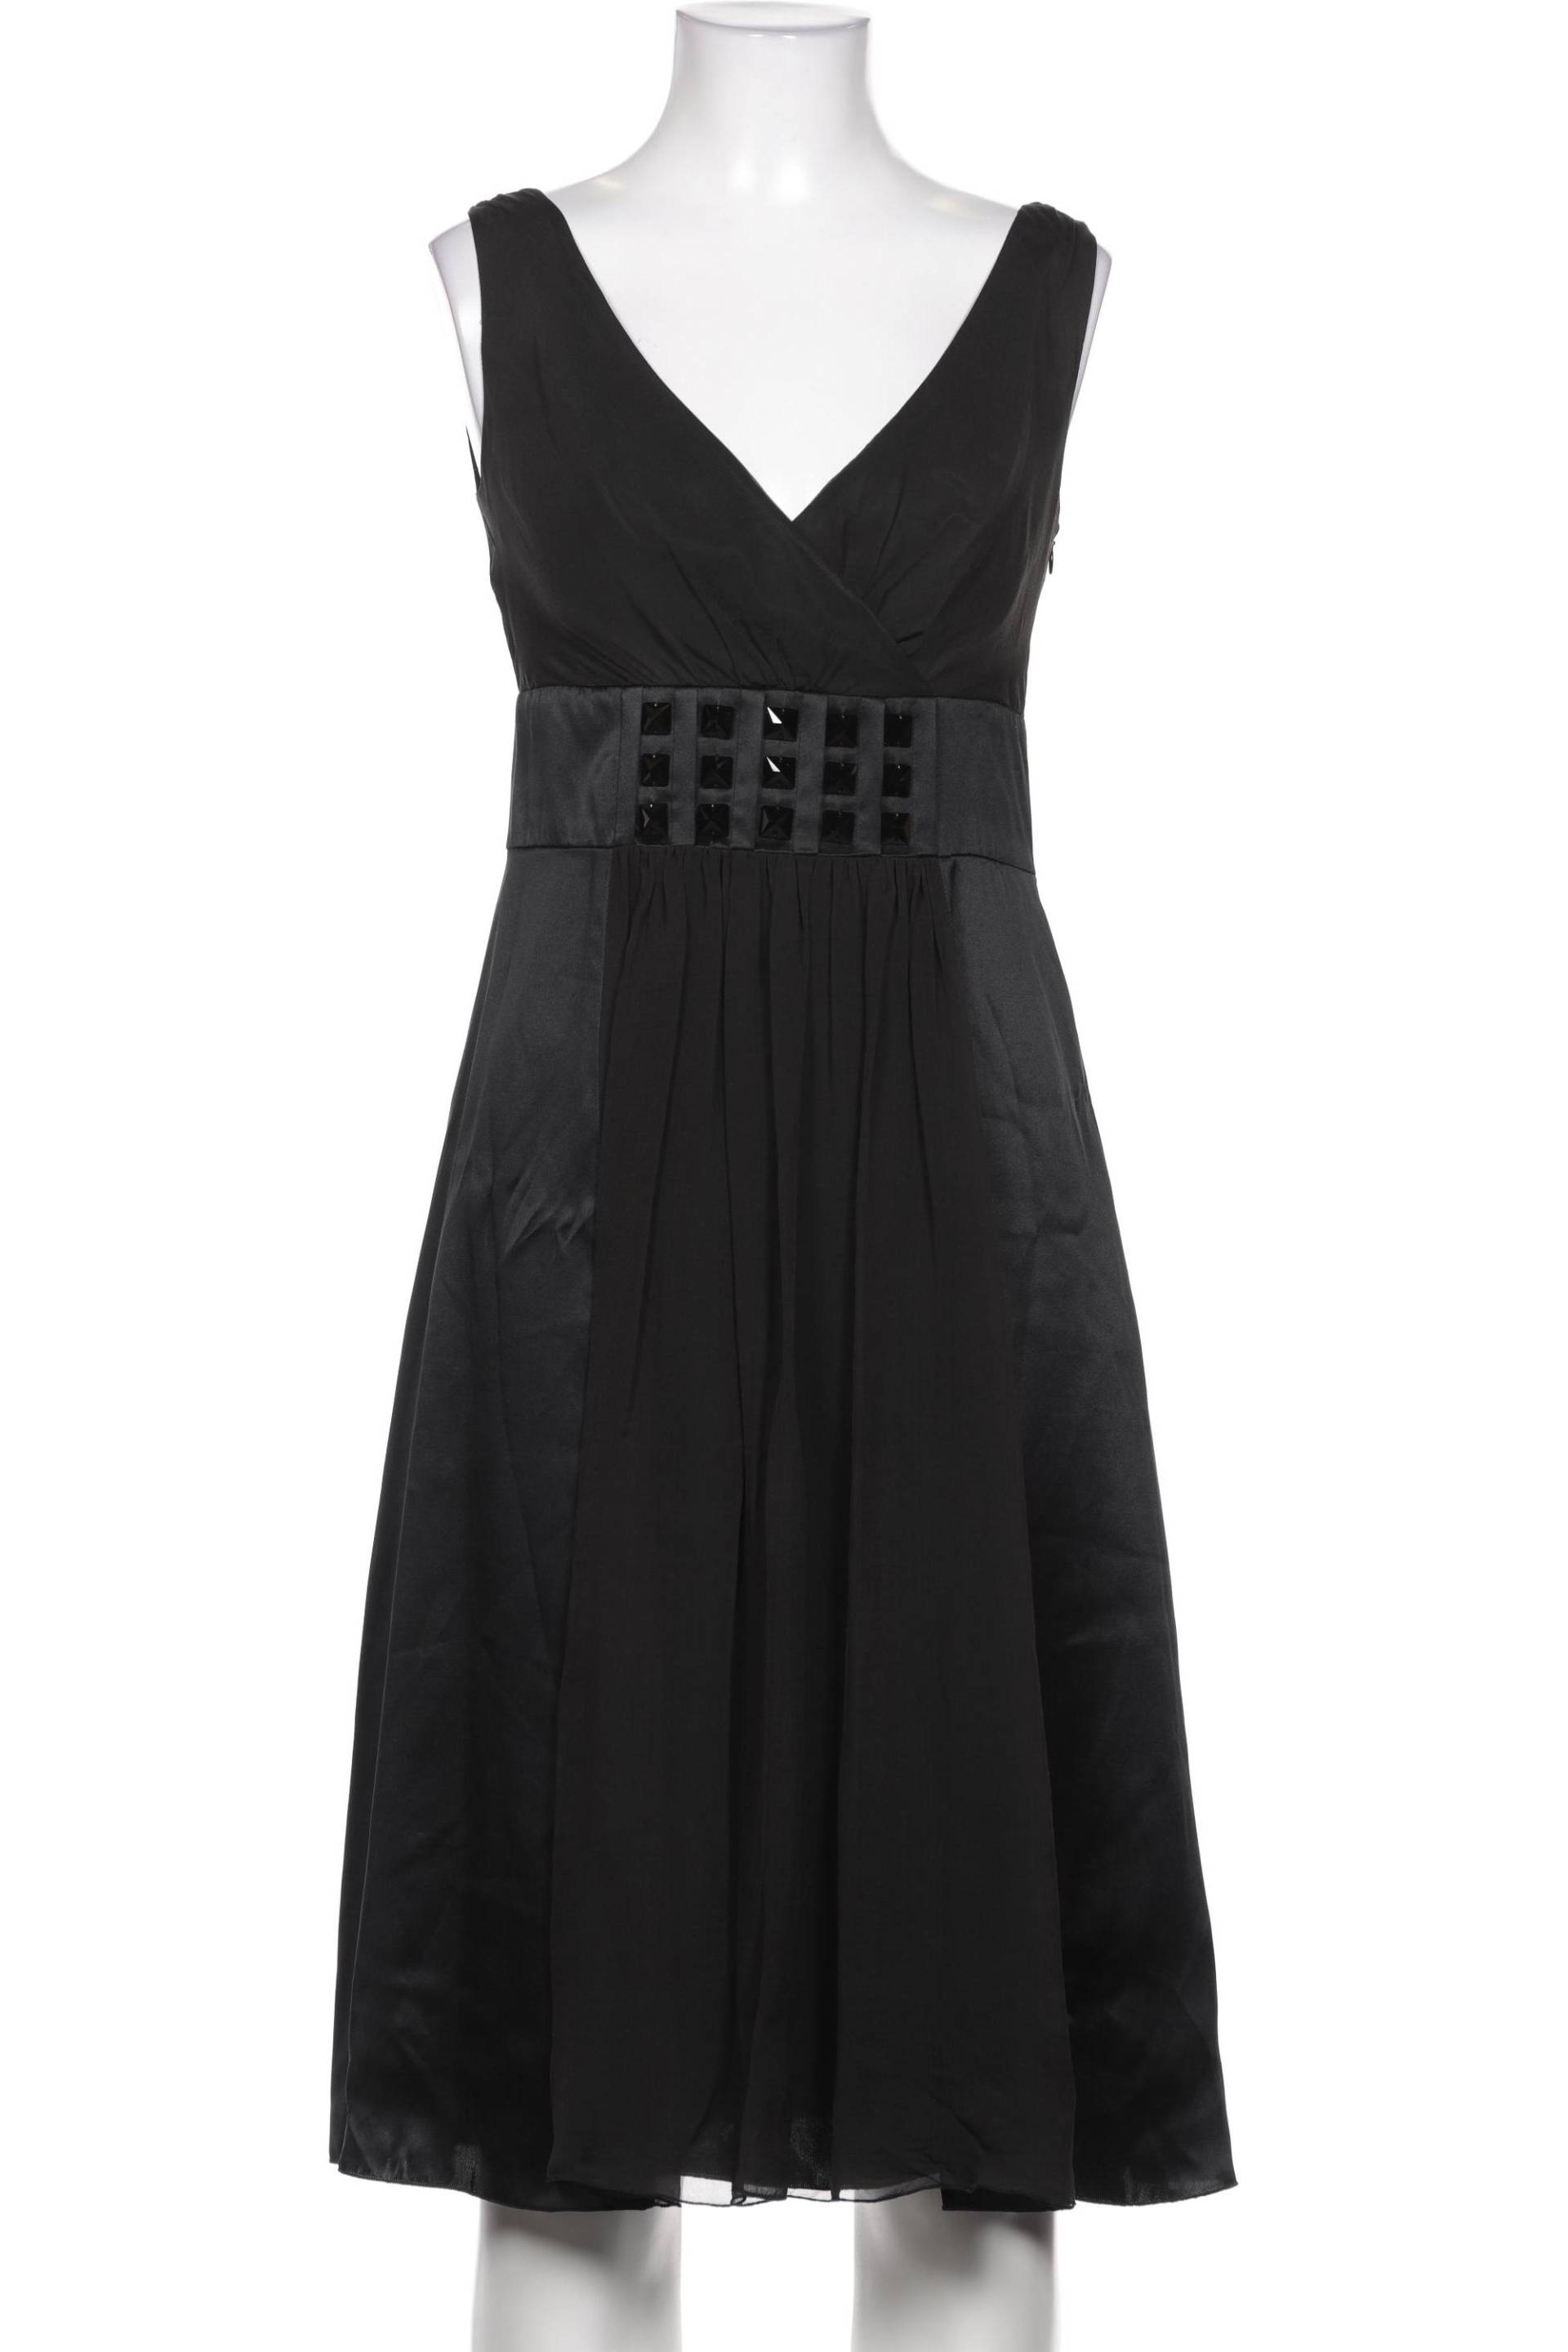 St.Emile Damen Kleid, schwarz, Gr. 36 von St.Emile